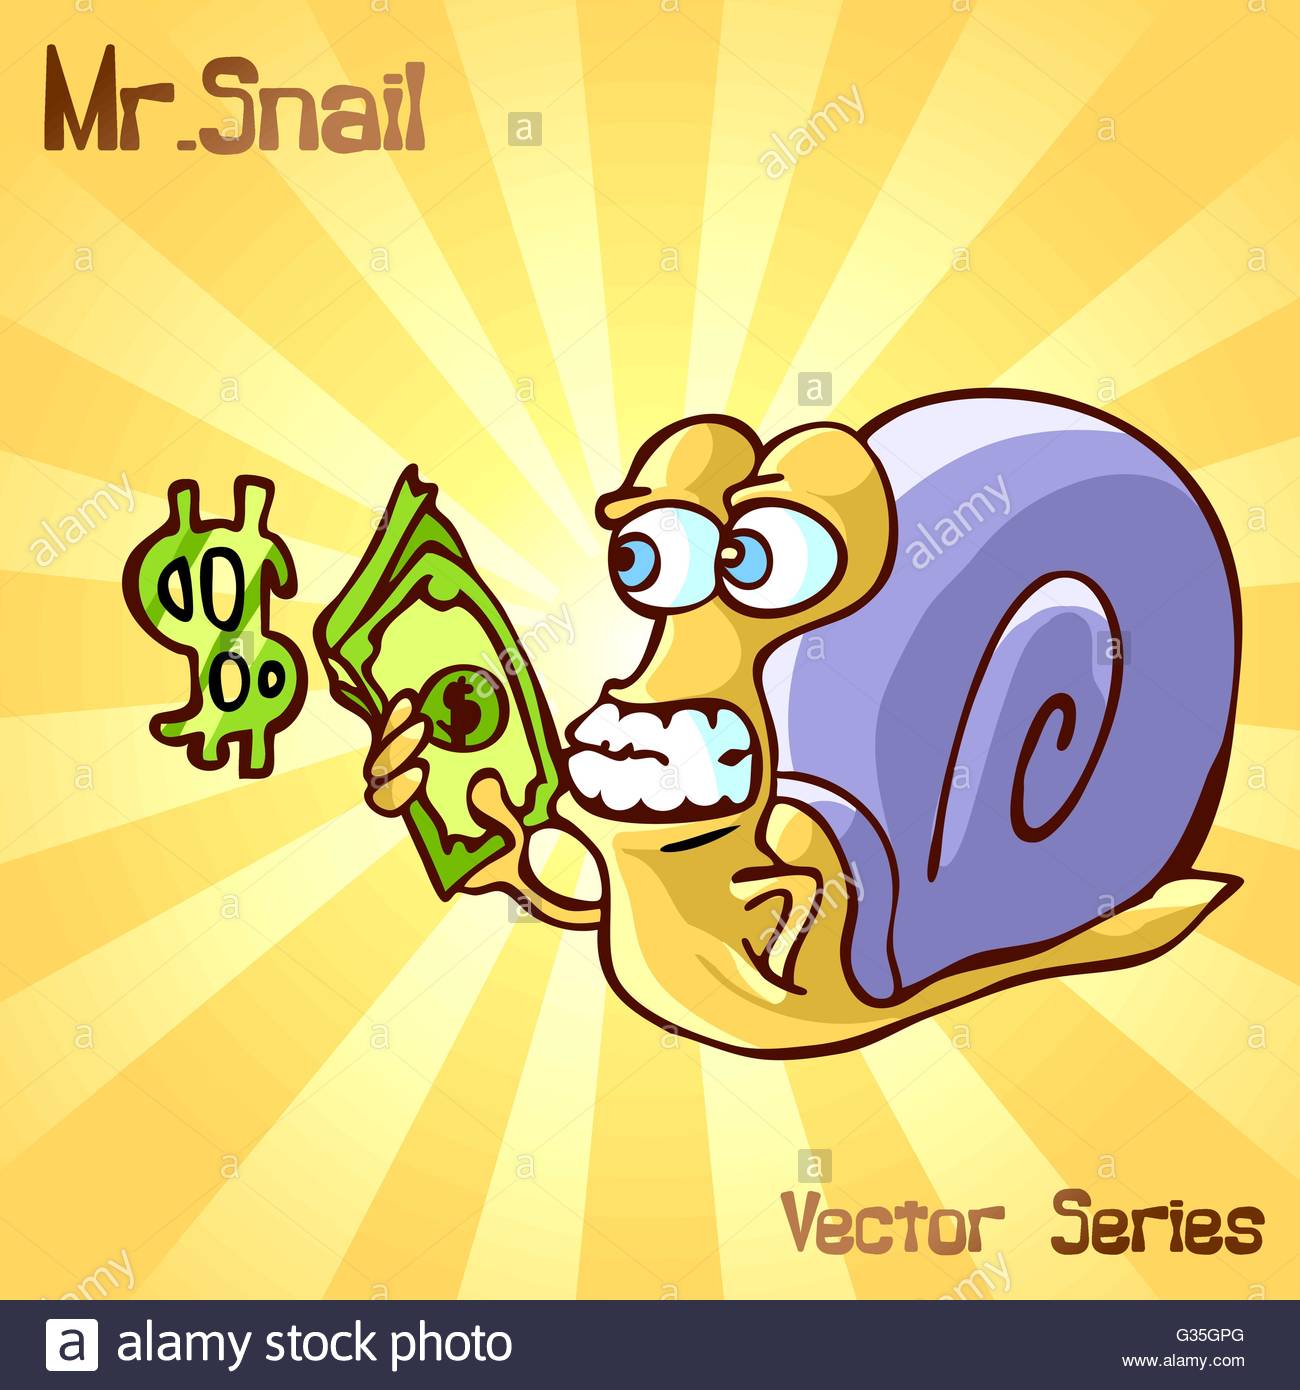 mr-snail-with-money-vector-illustration-G35GPG.jpg